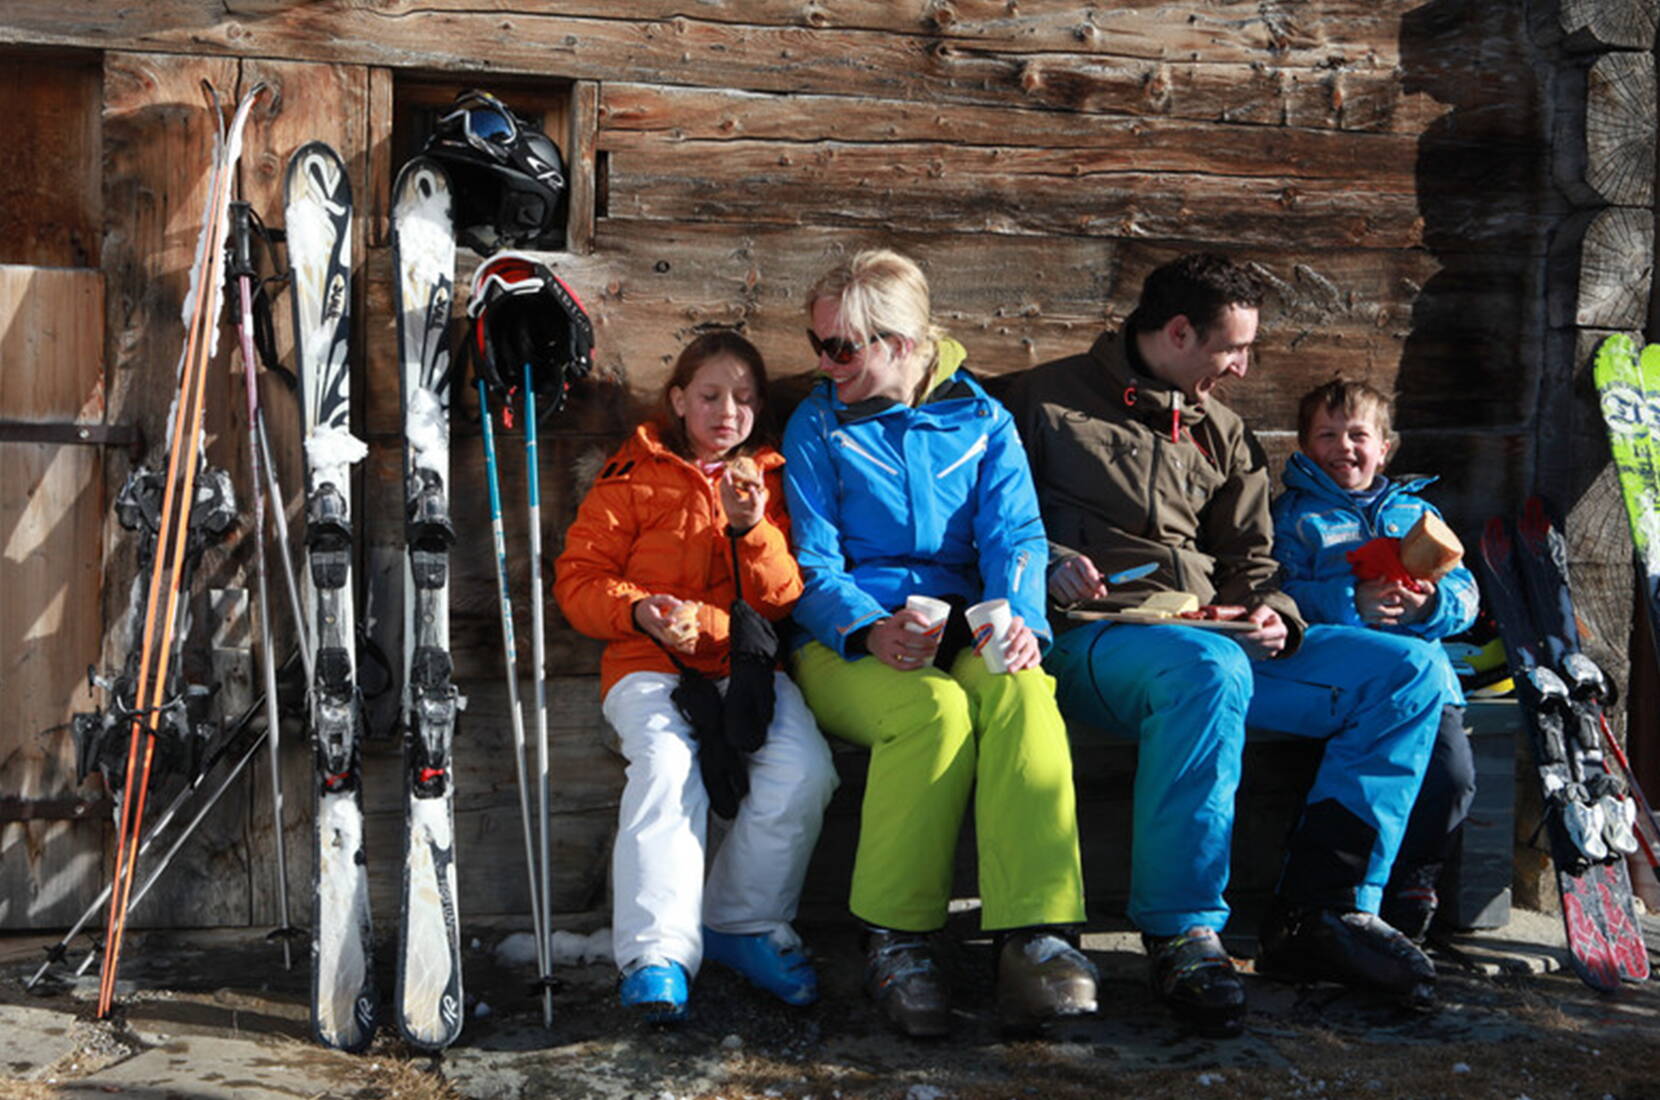 Familienausflug Savognin. Mit viel Naturschnee und extrabreiten roten und blauen Pisten bietet das sonnenverwöhnte Skigebiet besonderen Fahrspass – nicht umsonst zählen die Pisten in Savognin zu den Schönsten im ganzen Alpenraum.
